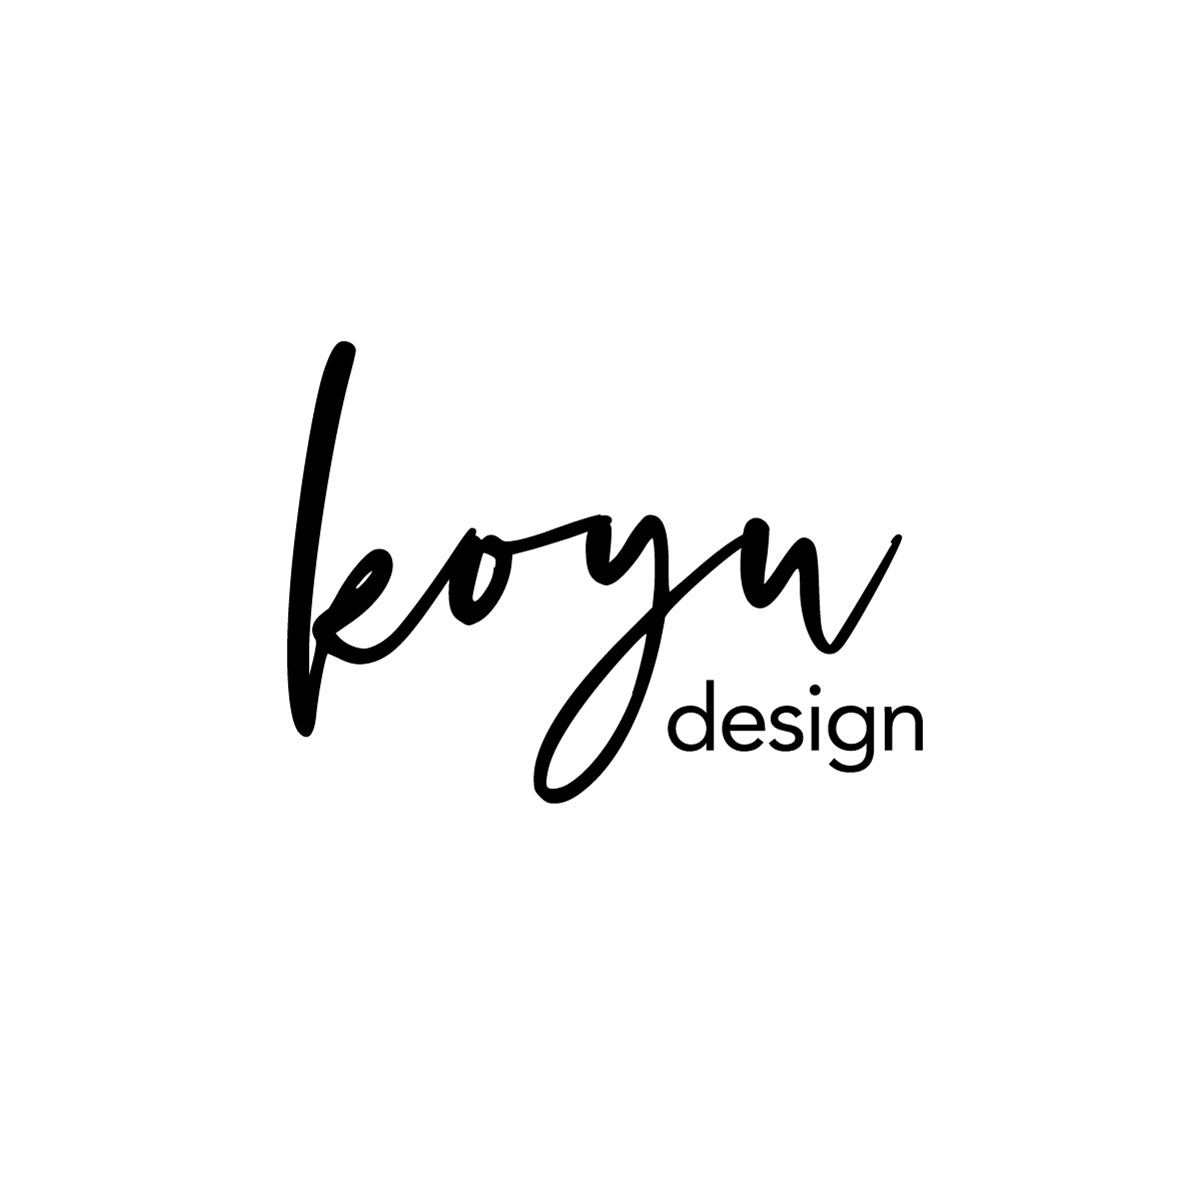 Koyu Design